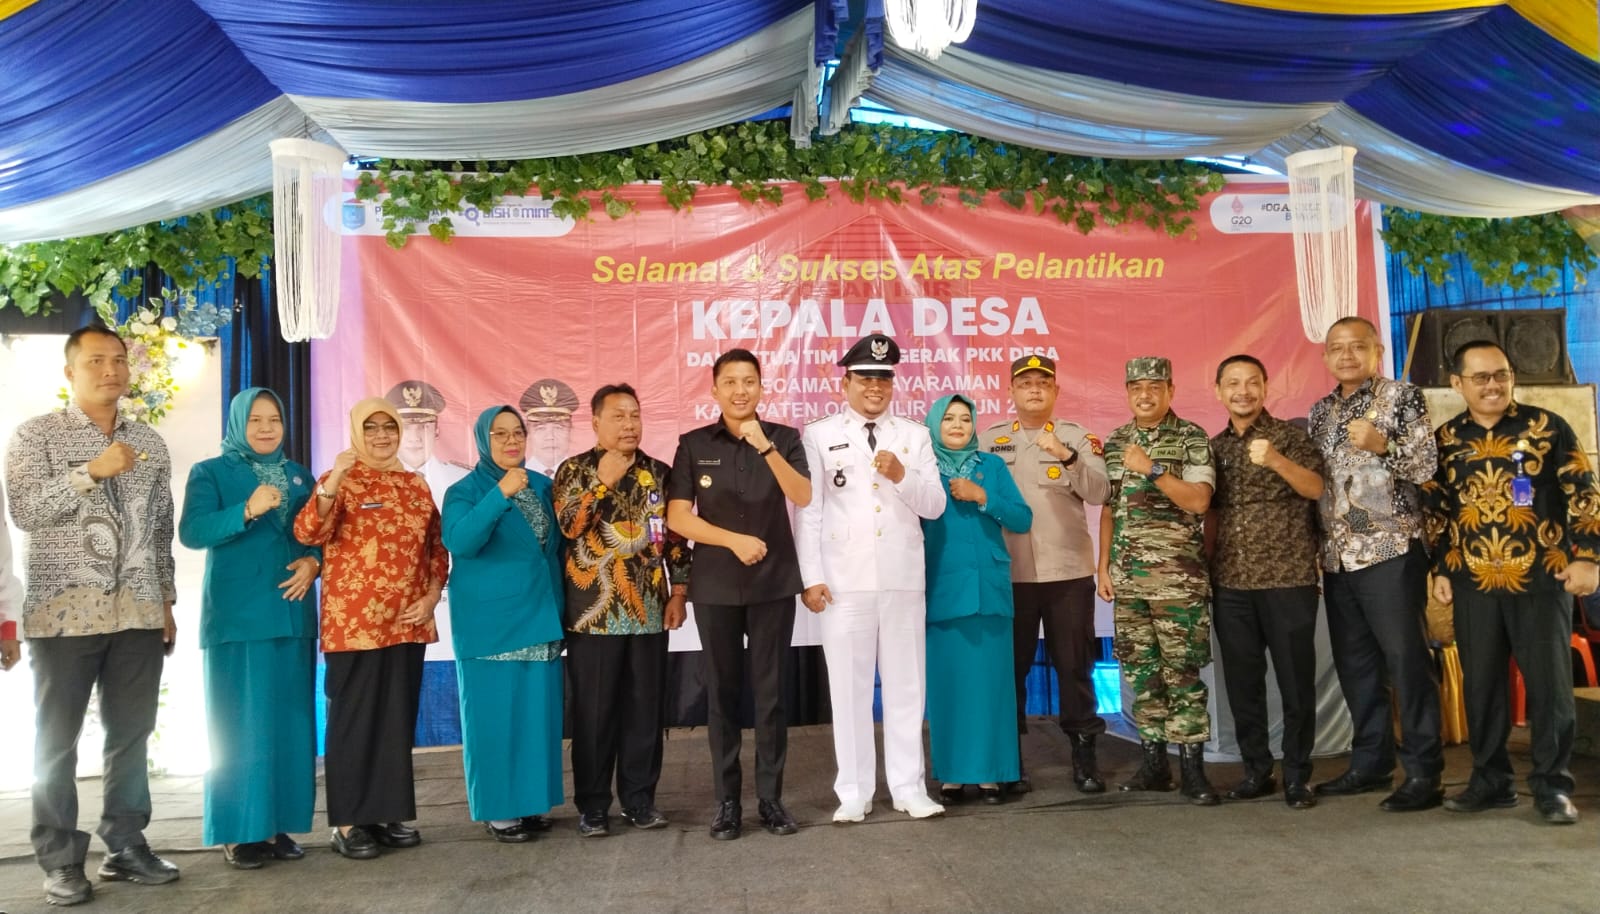 Bupati Panca Klaim Pilkades Serentak di Ogan Ilir Tahun 2022 Terbaik se-Indonesia